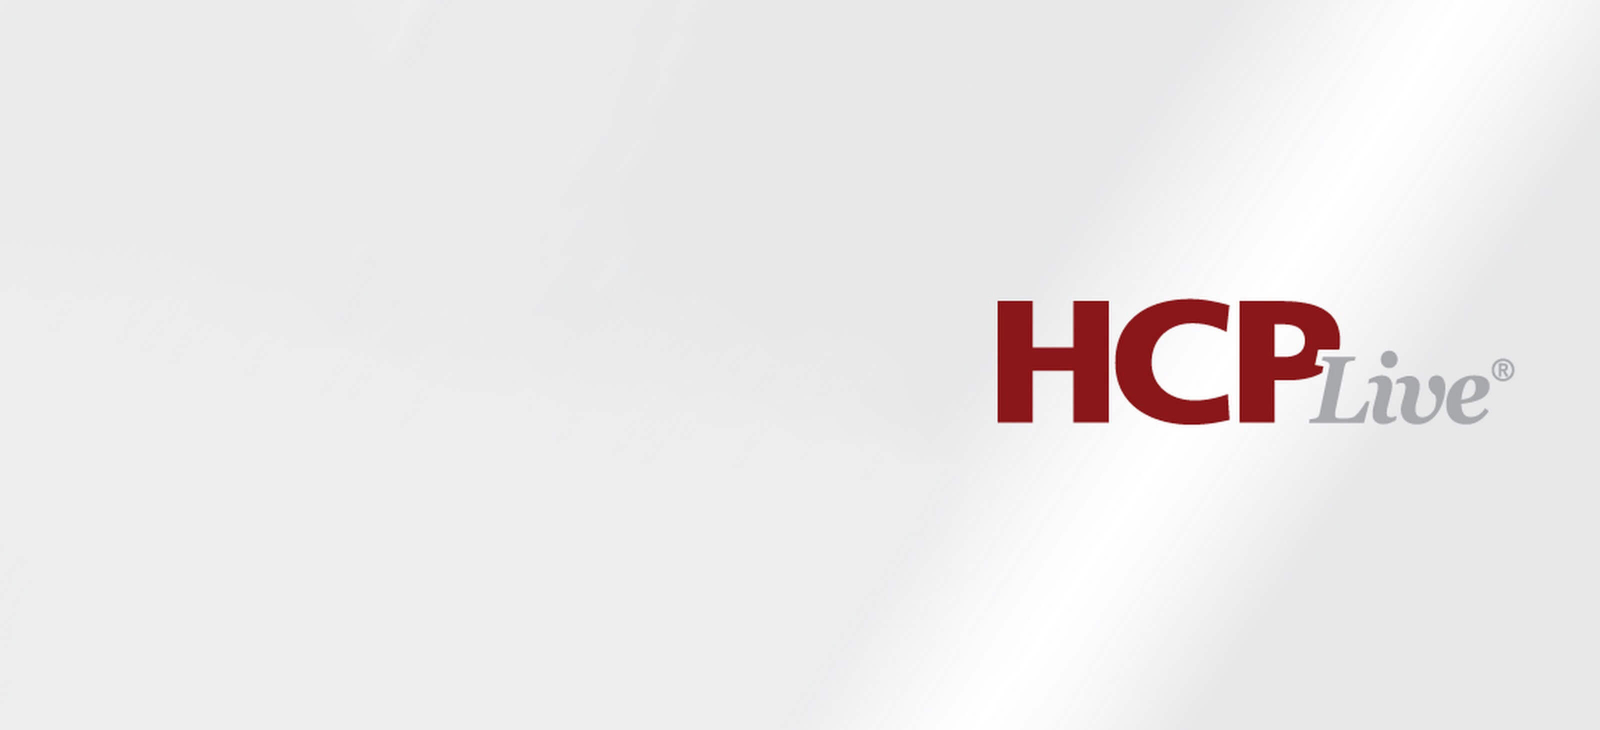 Full-width - Logo HCP Live 